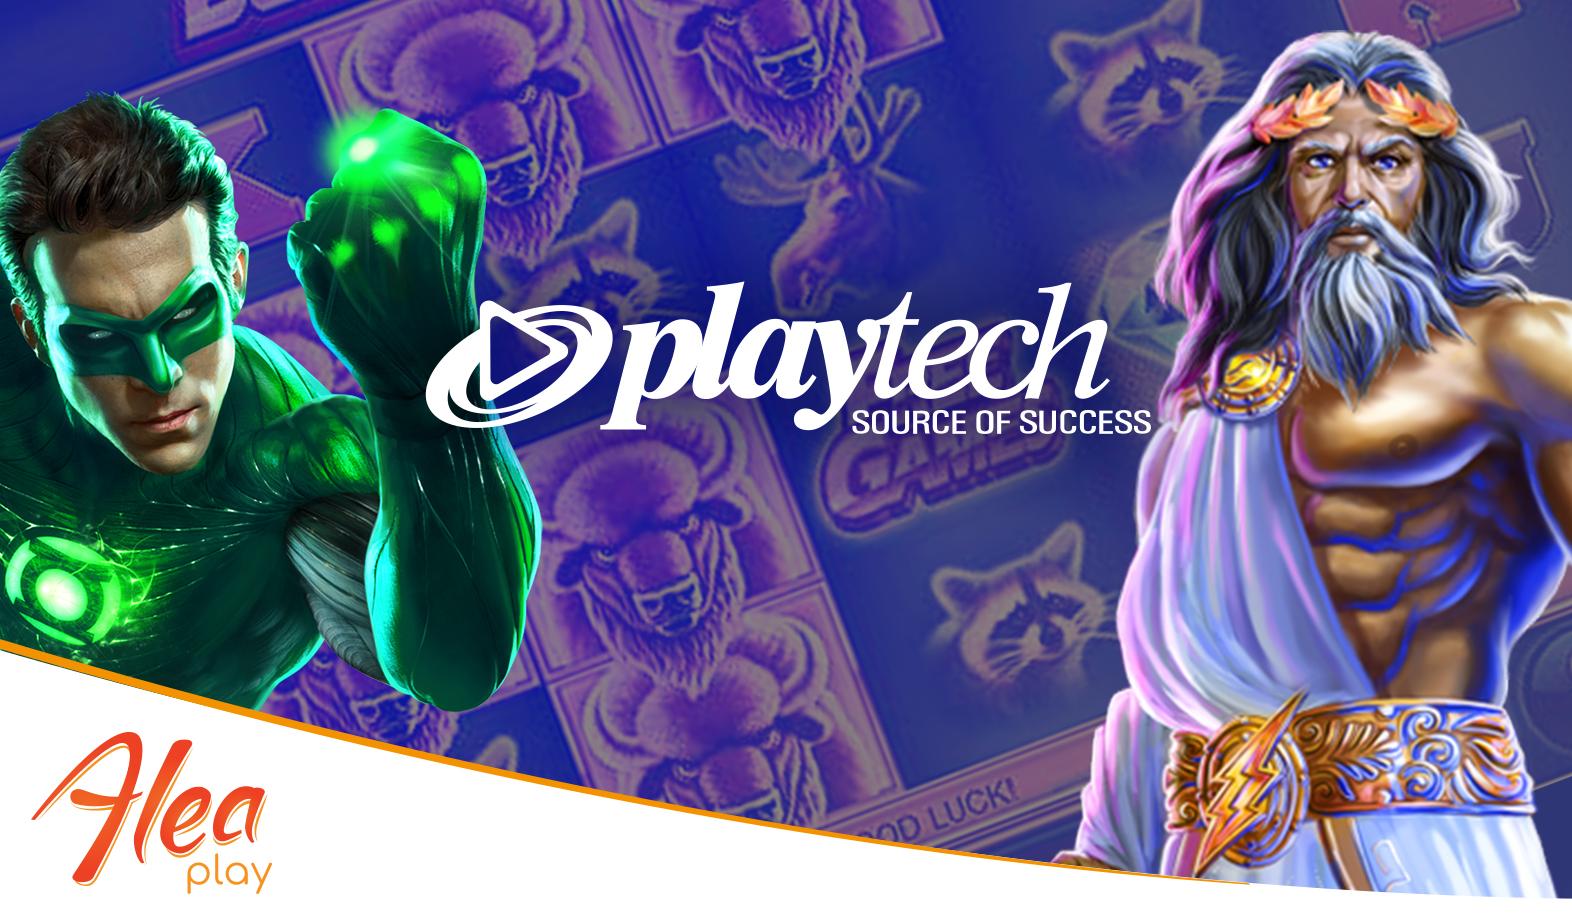 Playtech has arrived to Alea Play | Alea.com